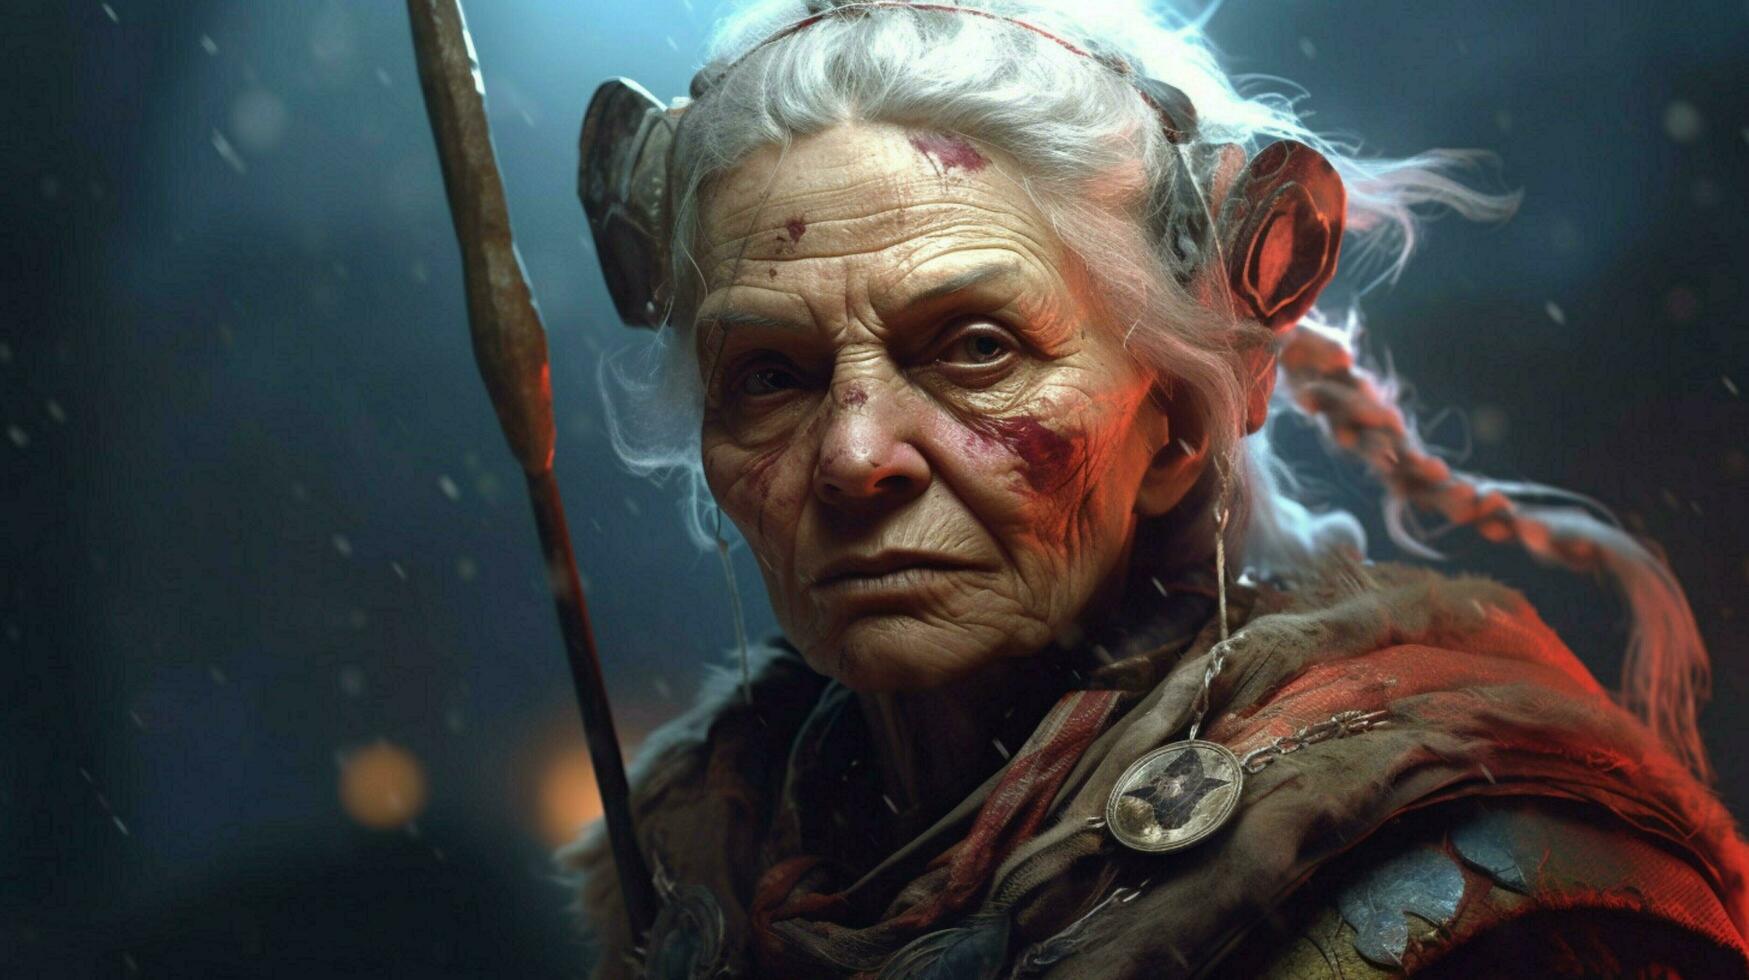 krijger oud vrouw gaming fictief wereld foto